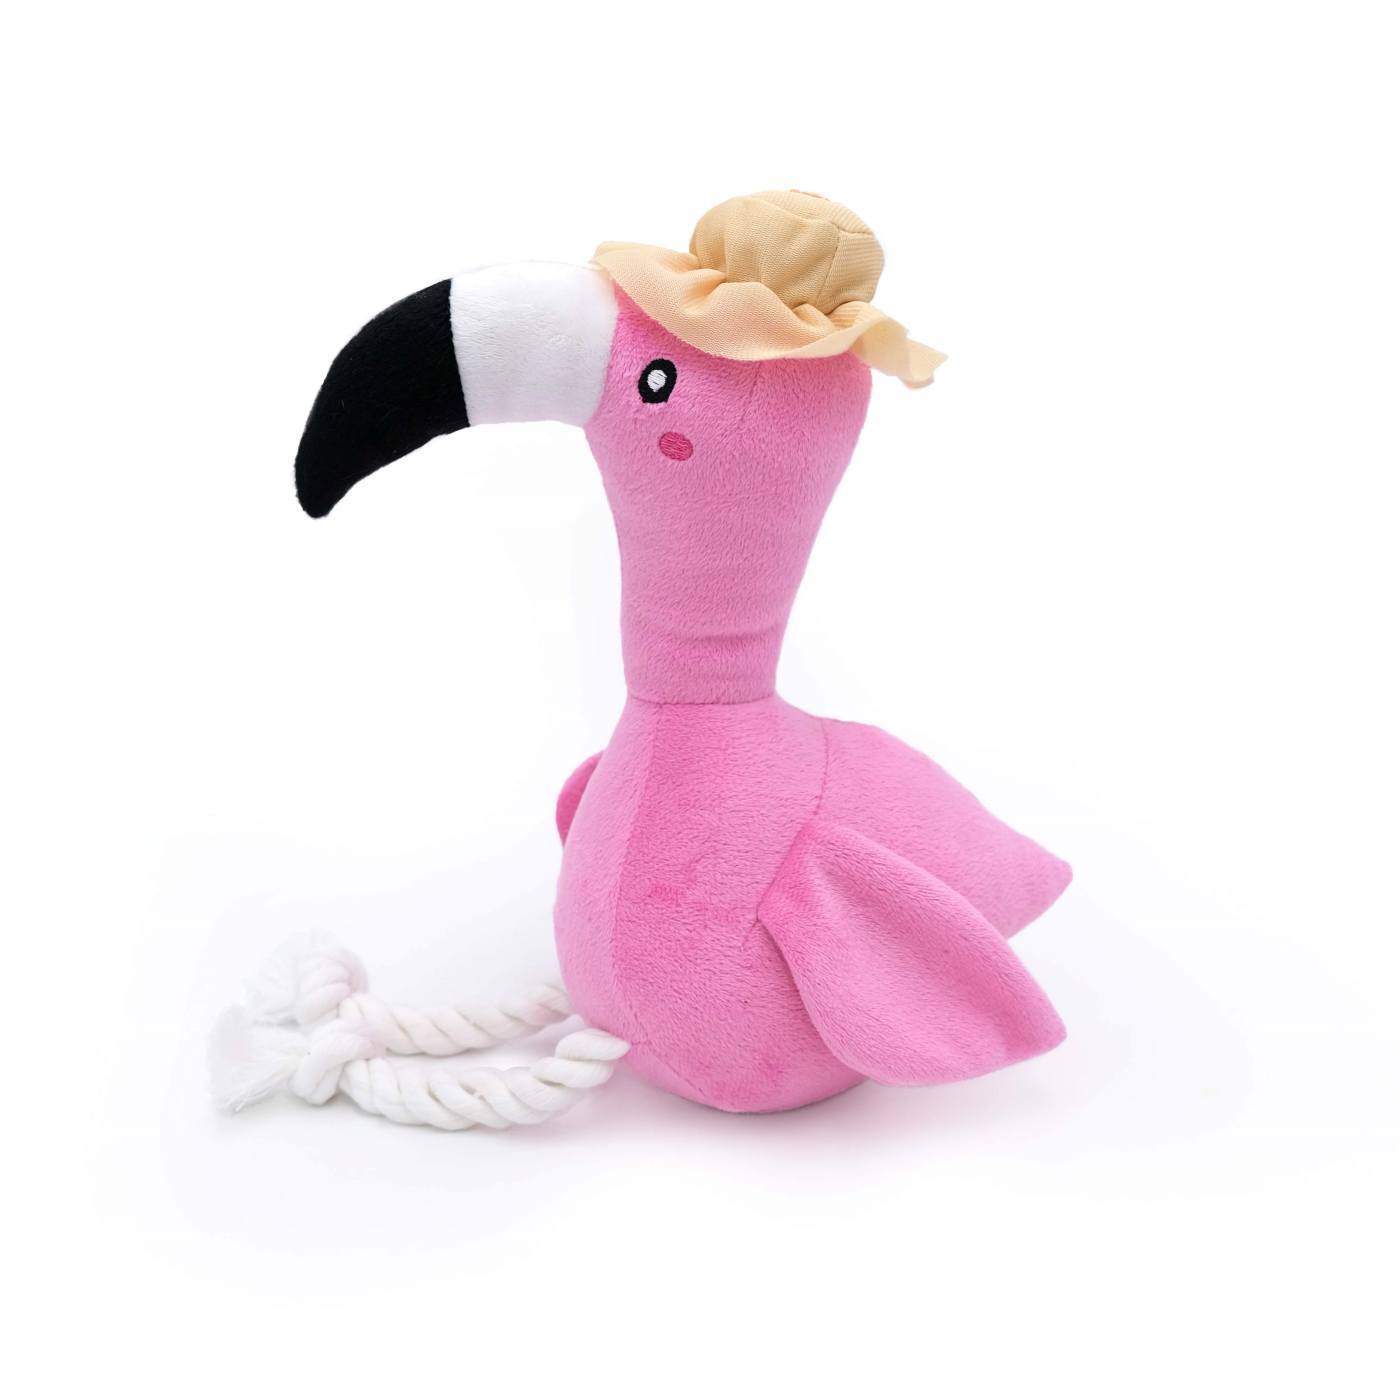 Zippy Paws Playful Pal Plush Squeaker Rope Dog Toy - Freya the Flamingo  image 0